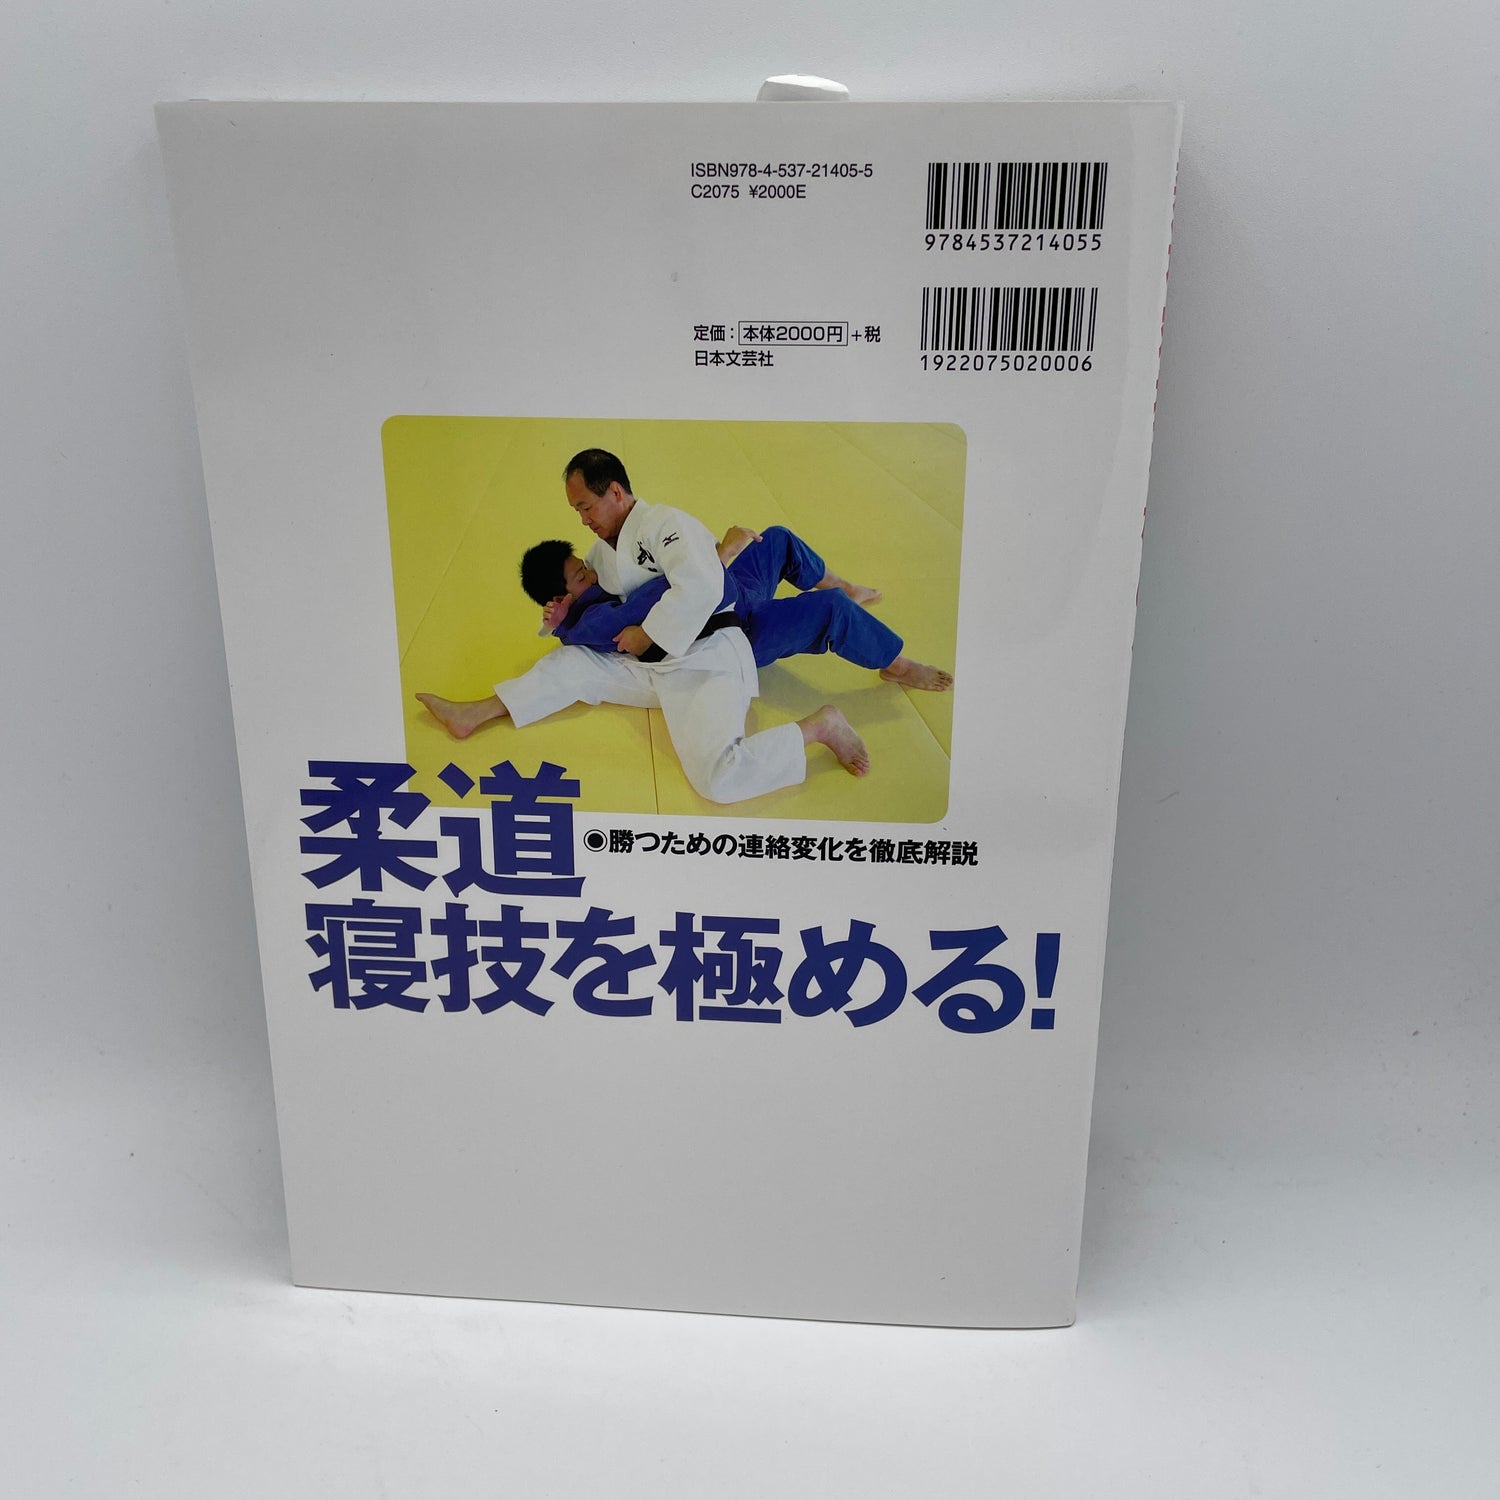 Libro Maestro de lucha terrestre de judo por Katsuhiko Kashiwazaki